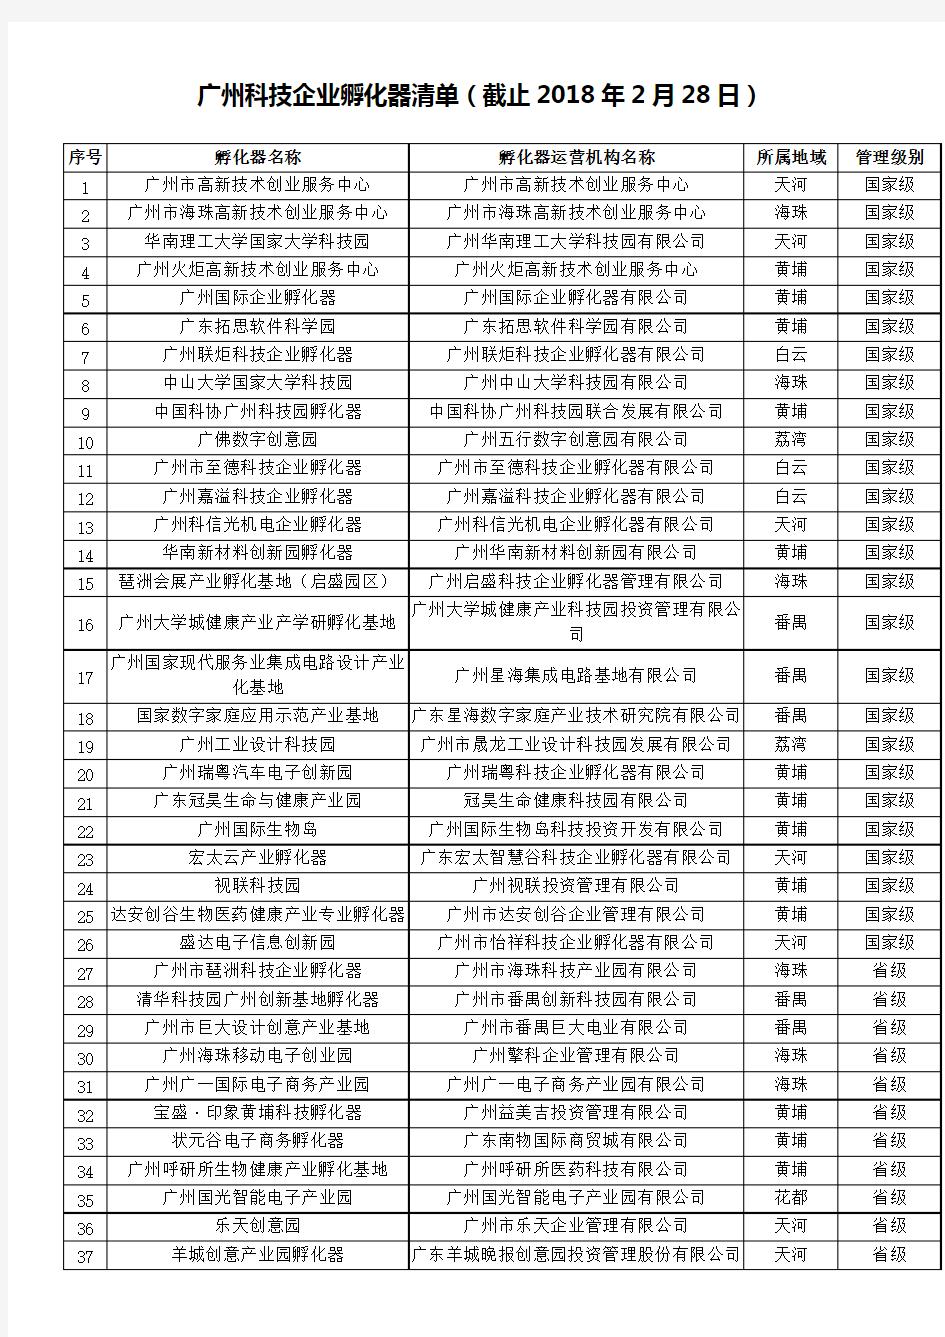 广州科技企业孵化器清单(截止2018年2月28日)(最新整理)